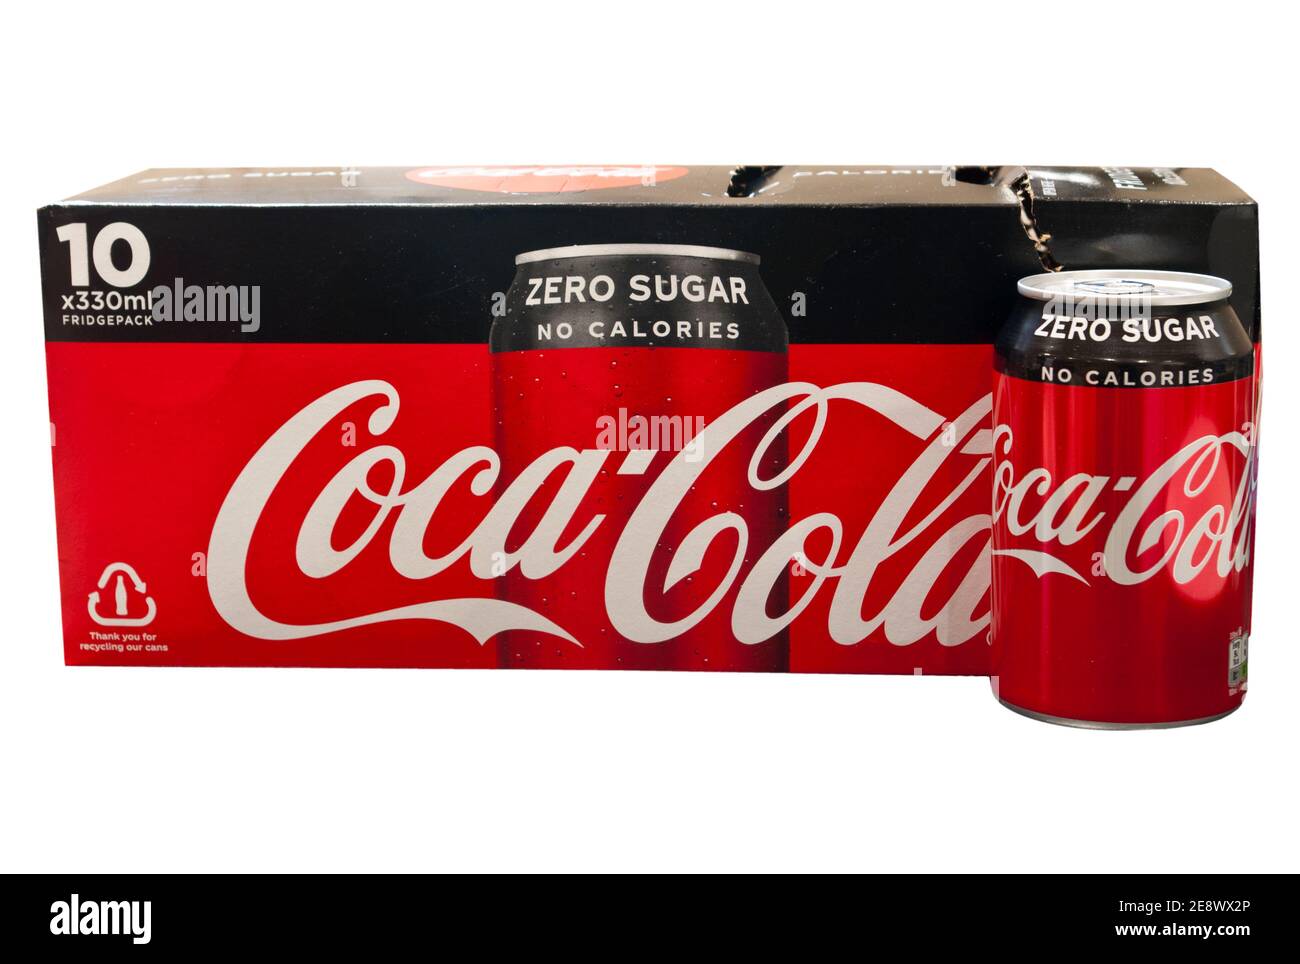 Scatola e lattina di zucchero Zero senza calorie Coca Cola Foto Stock